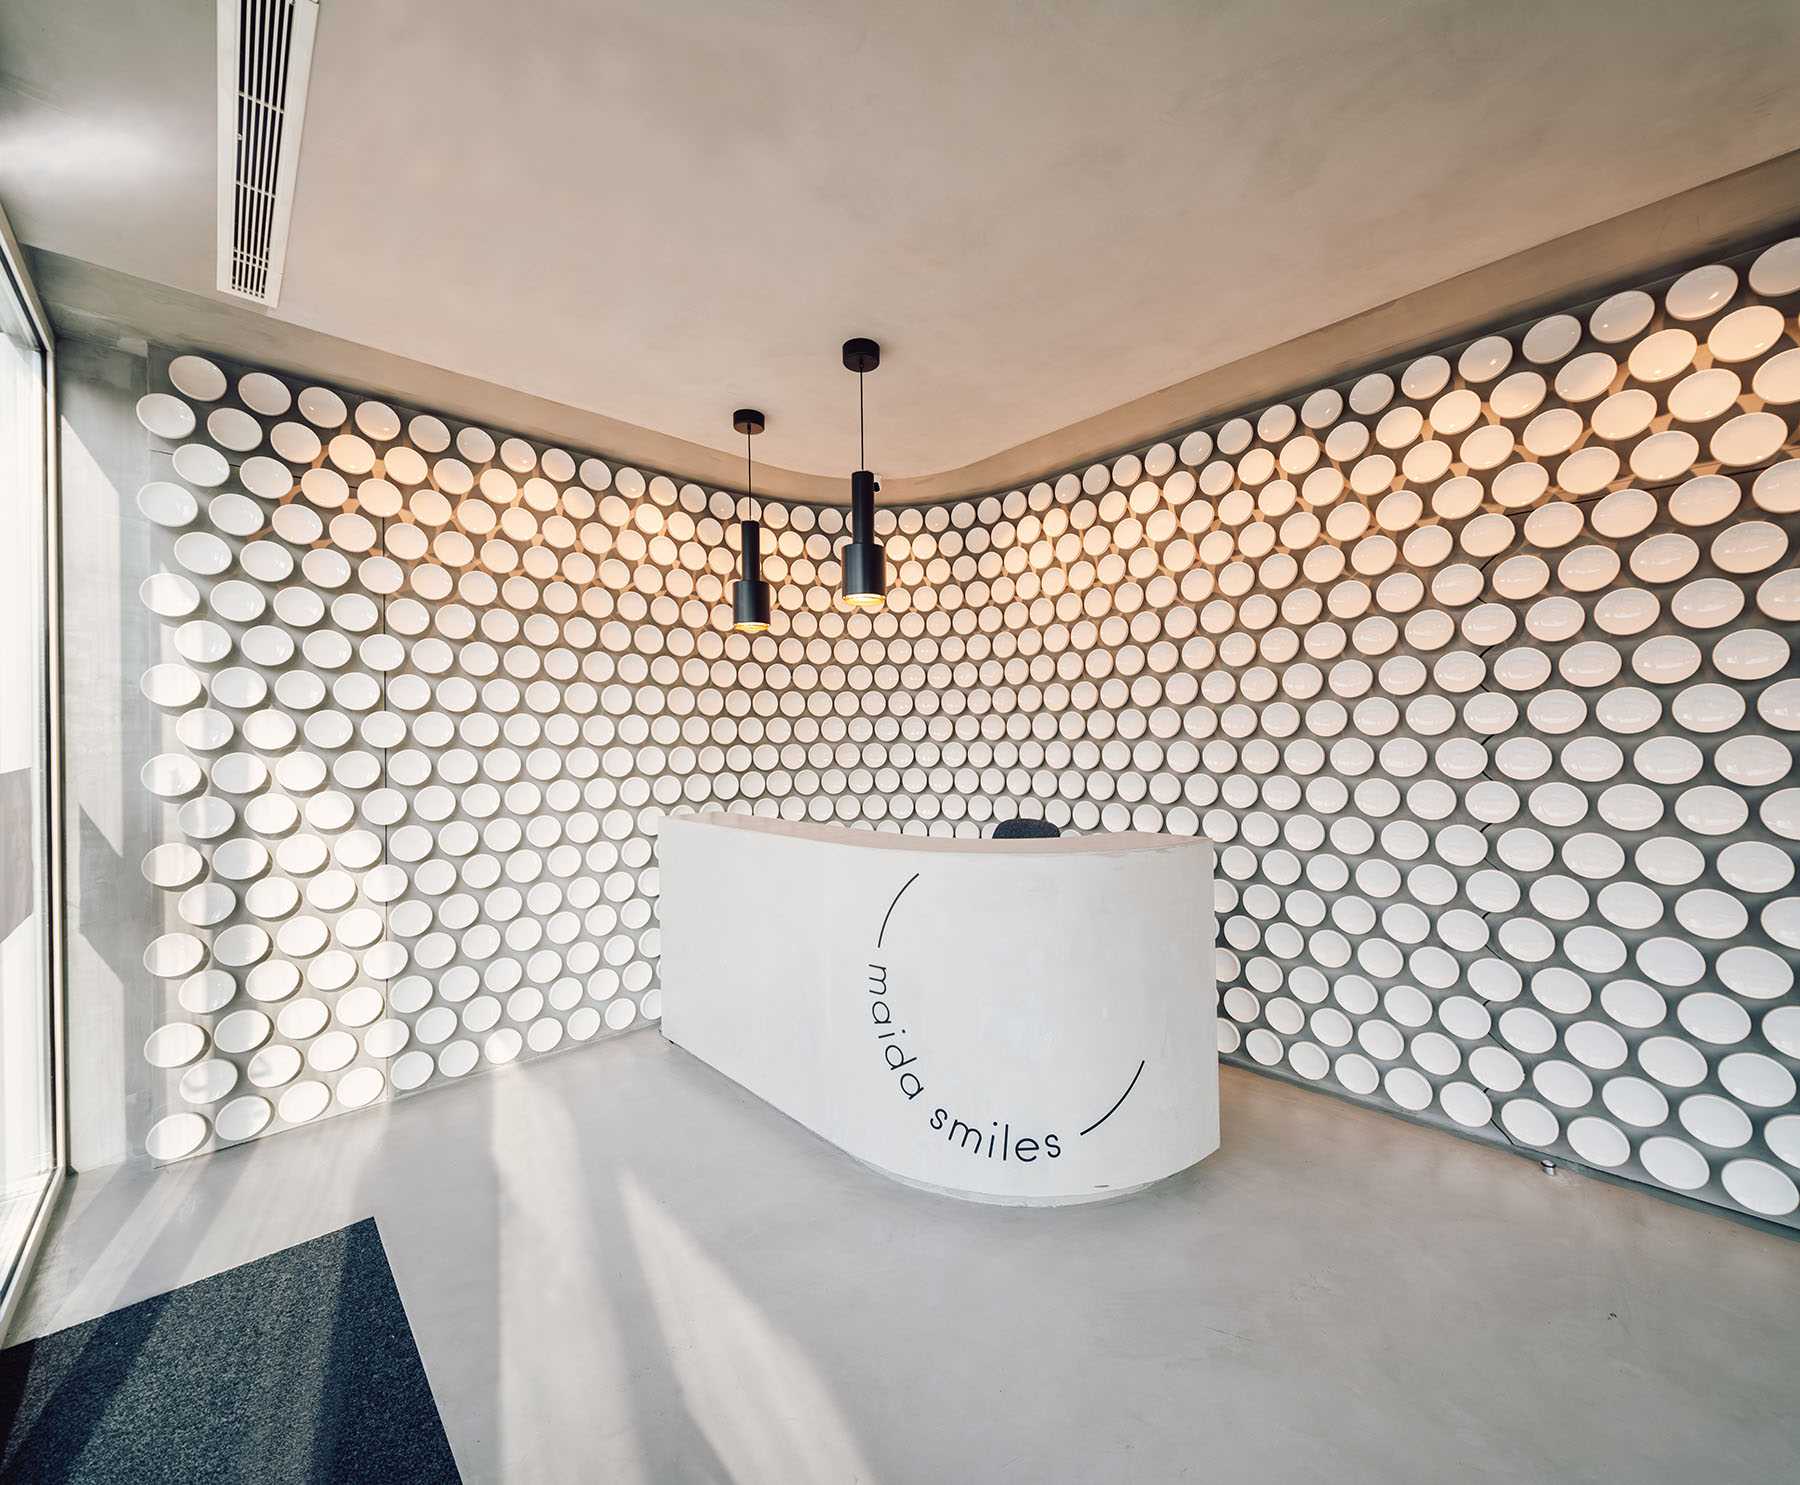 Mais de 500 discos de cerâmica feitos à mão revestem a parede desta moderna clínica odontológica, enquanto o microcimento cobre o chão.